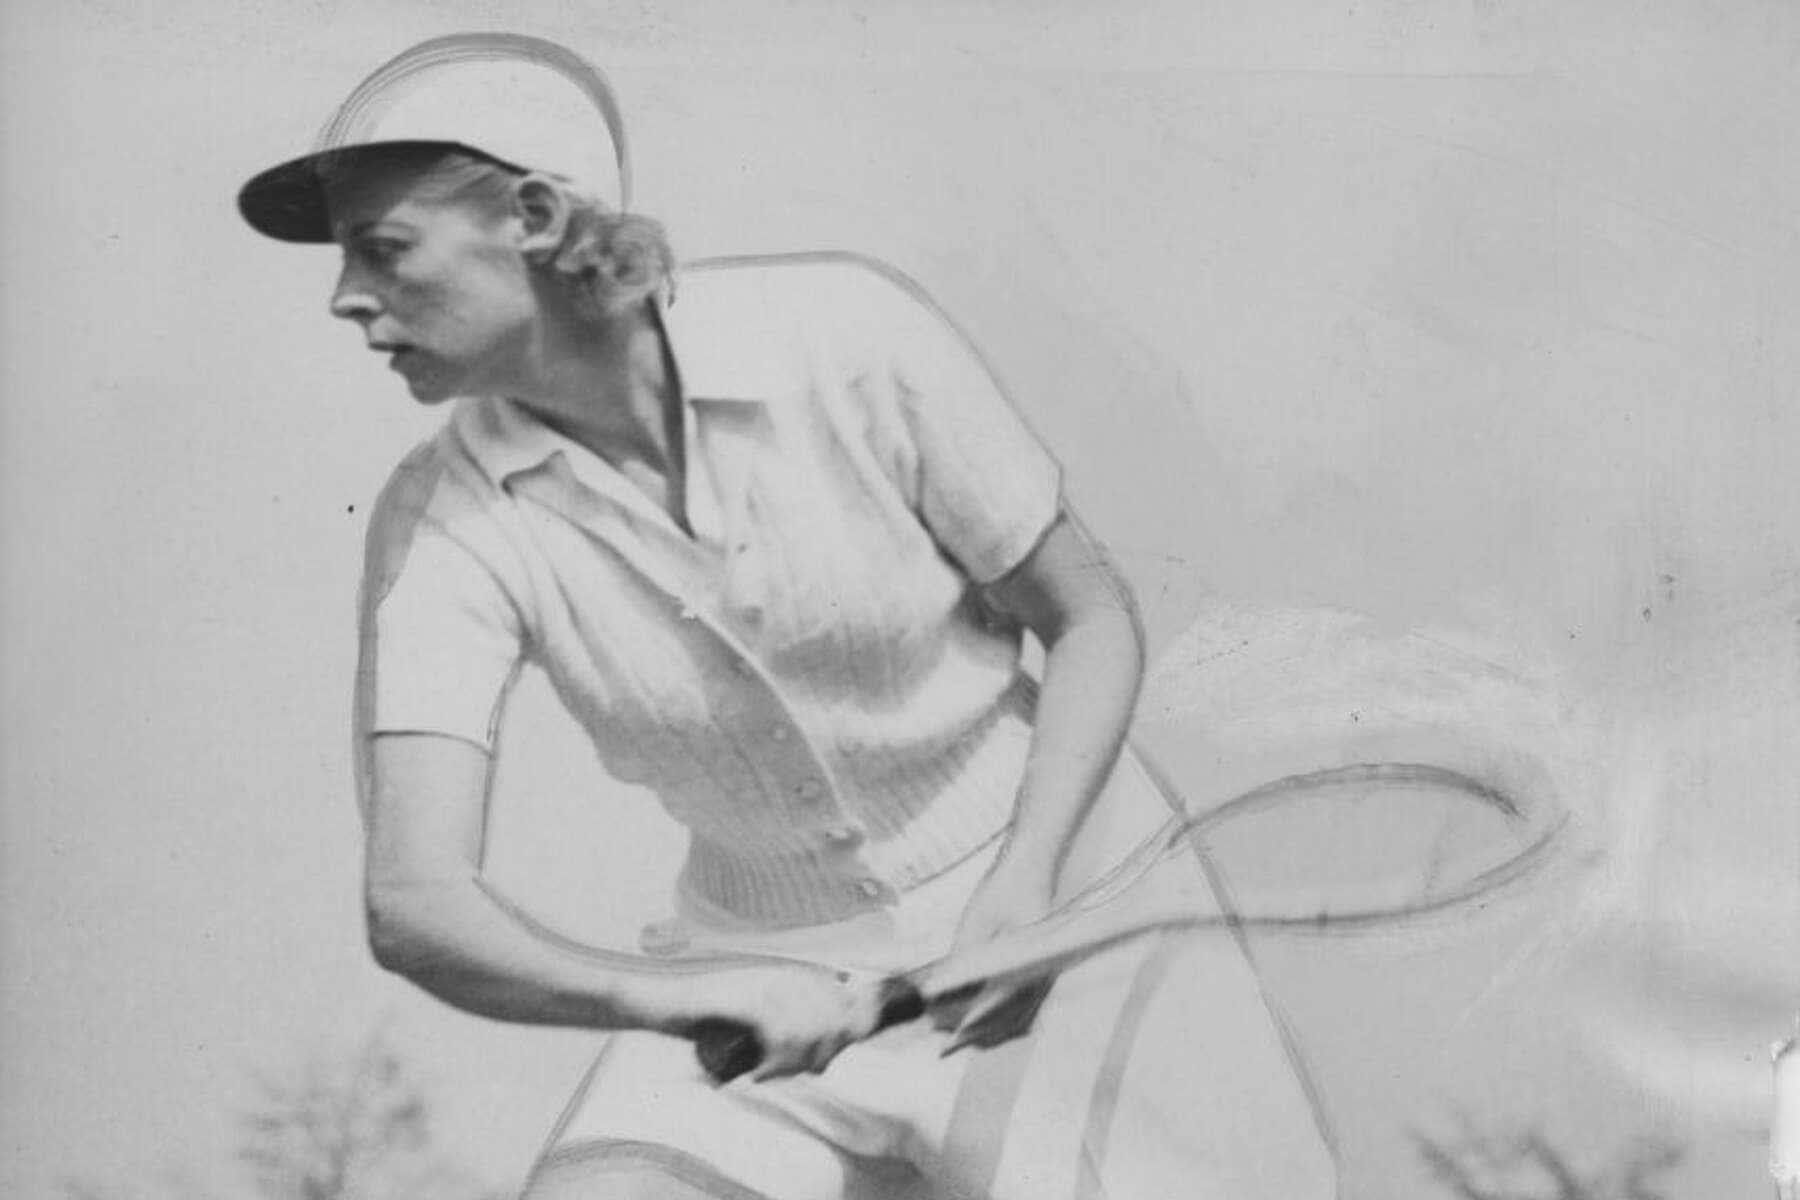 Spelandeamerikansk Tennisspelare Alice Marble. Wallpaper